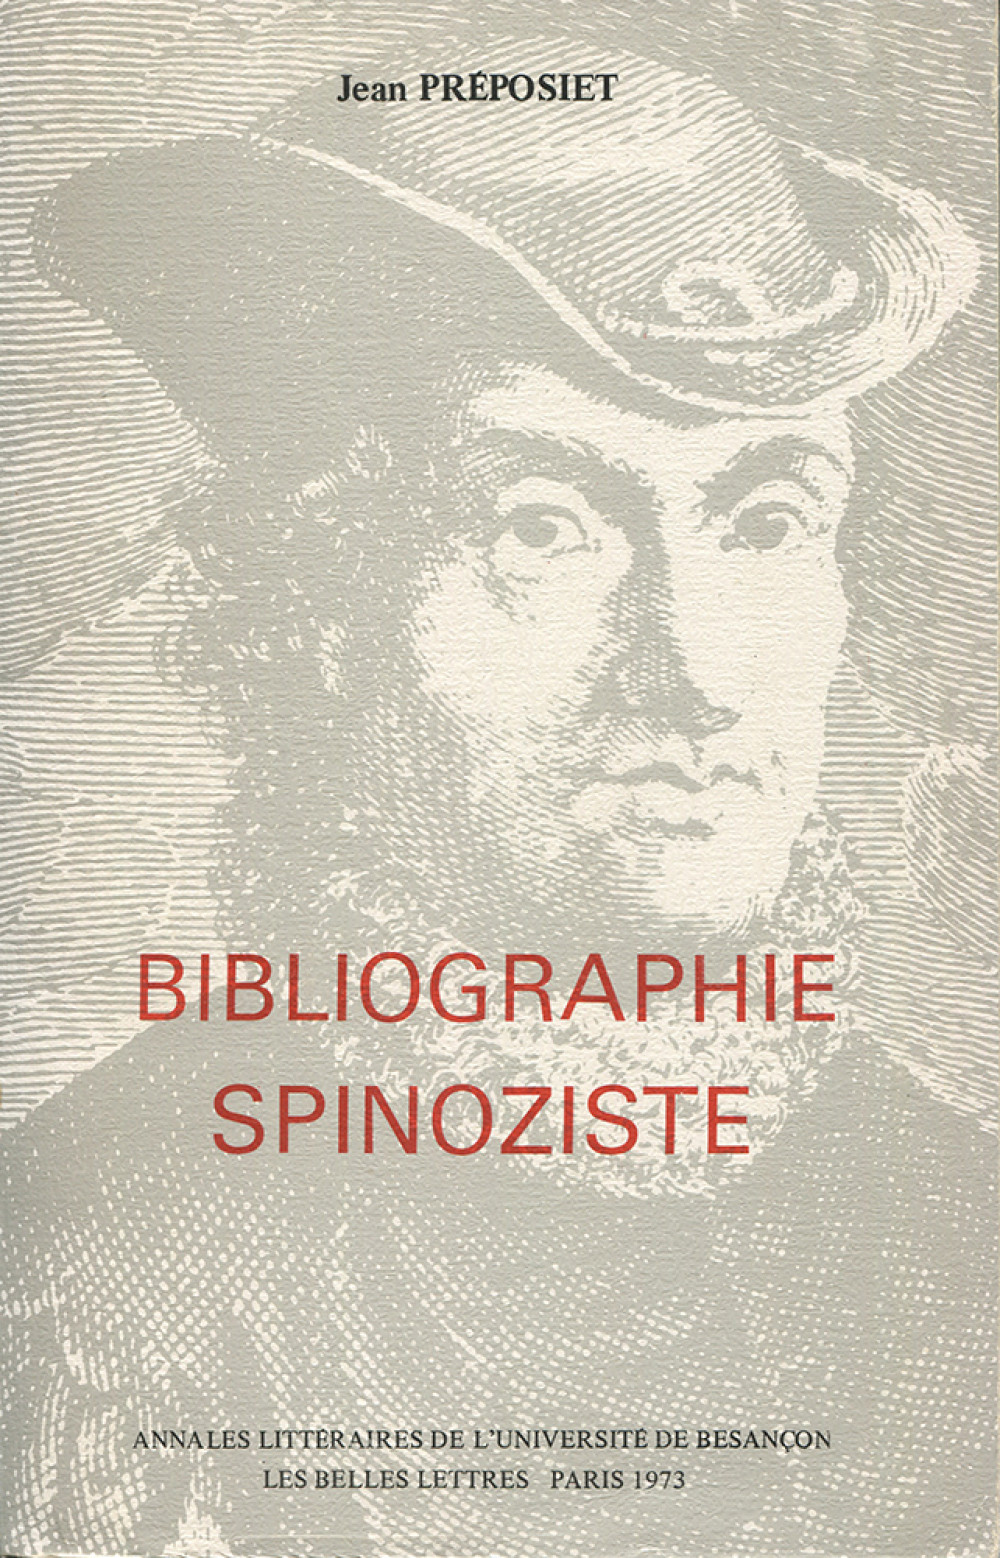 Bibliographie spinoziste